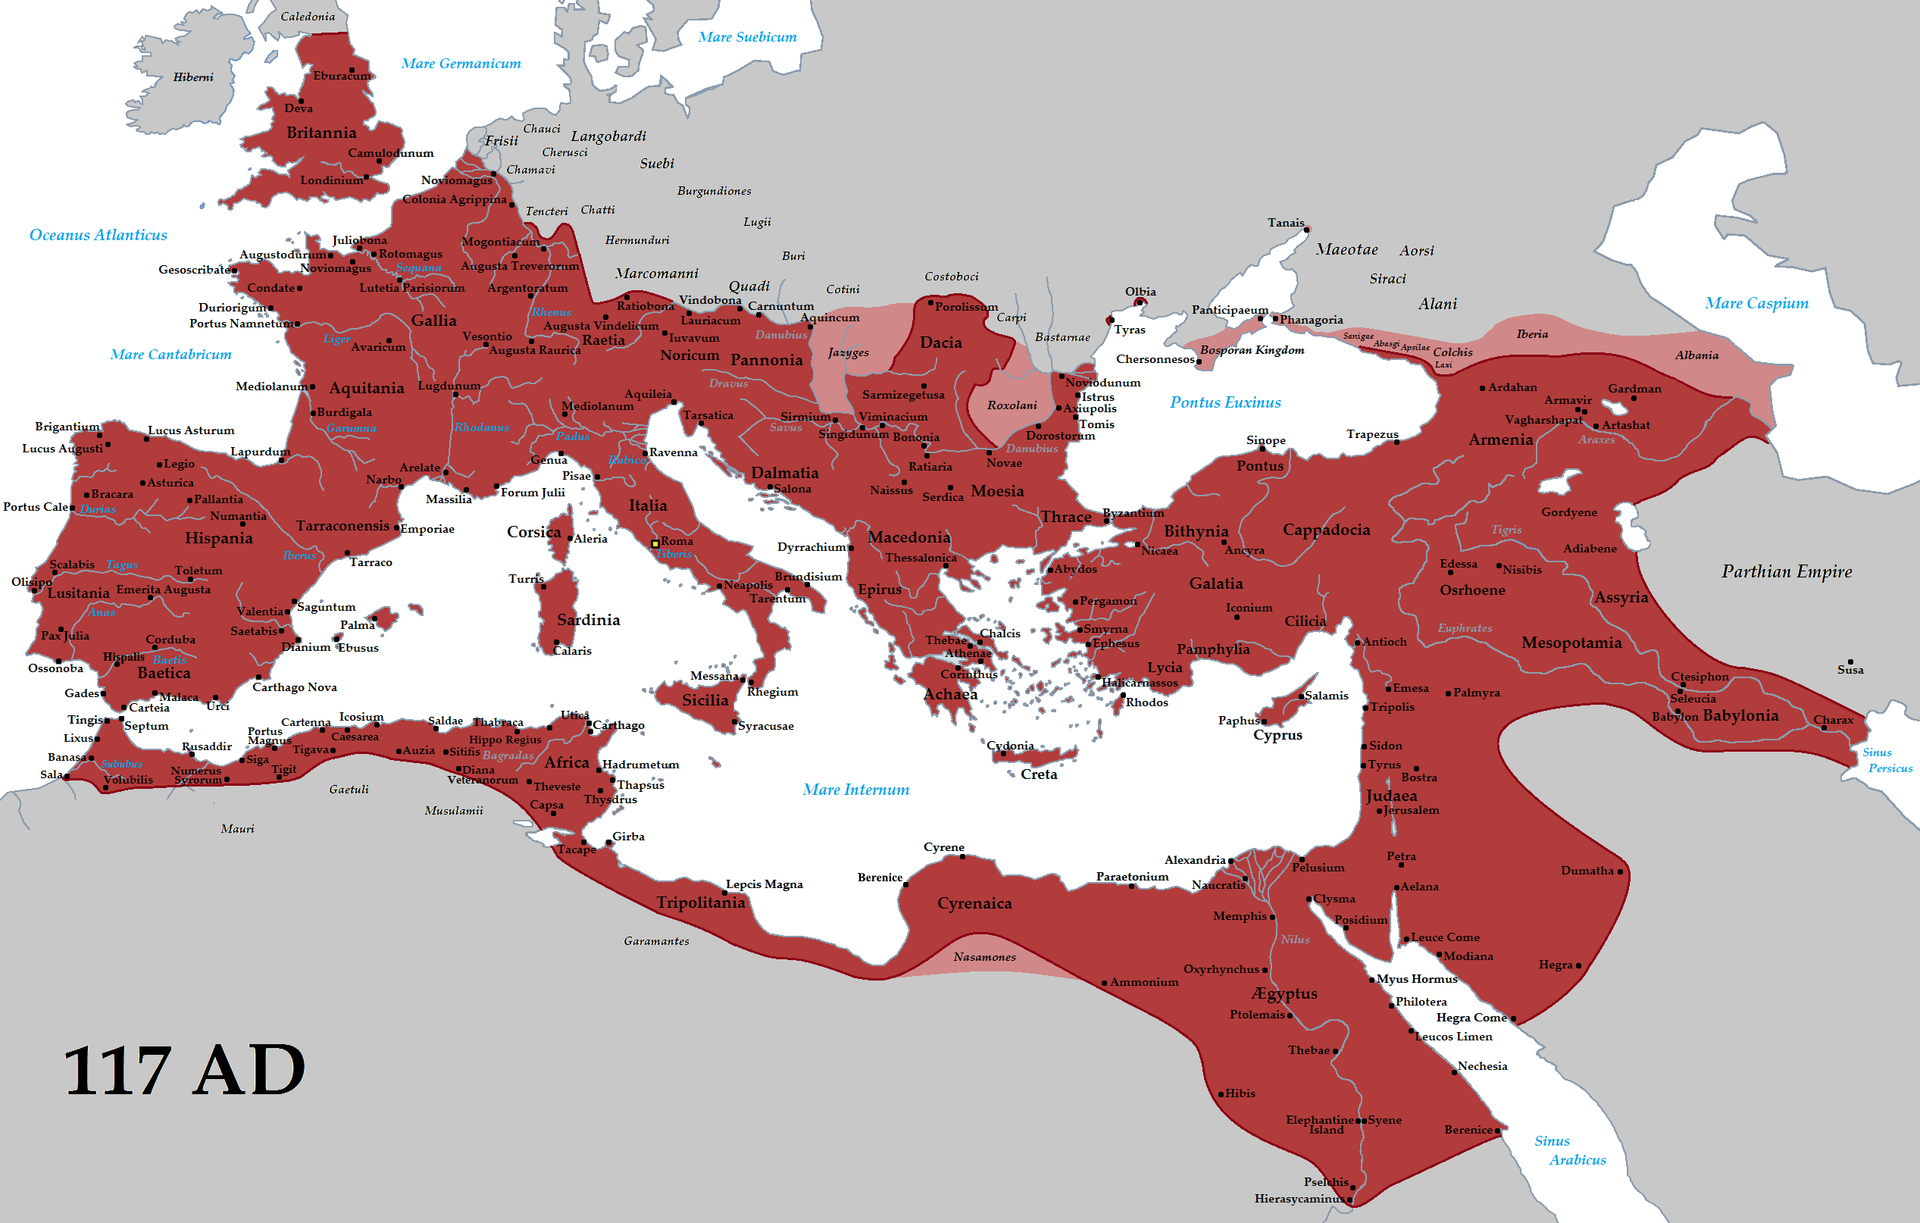 Impero-romano-traiano-117ad.png